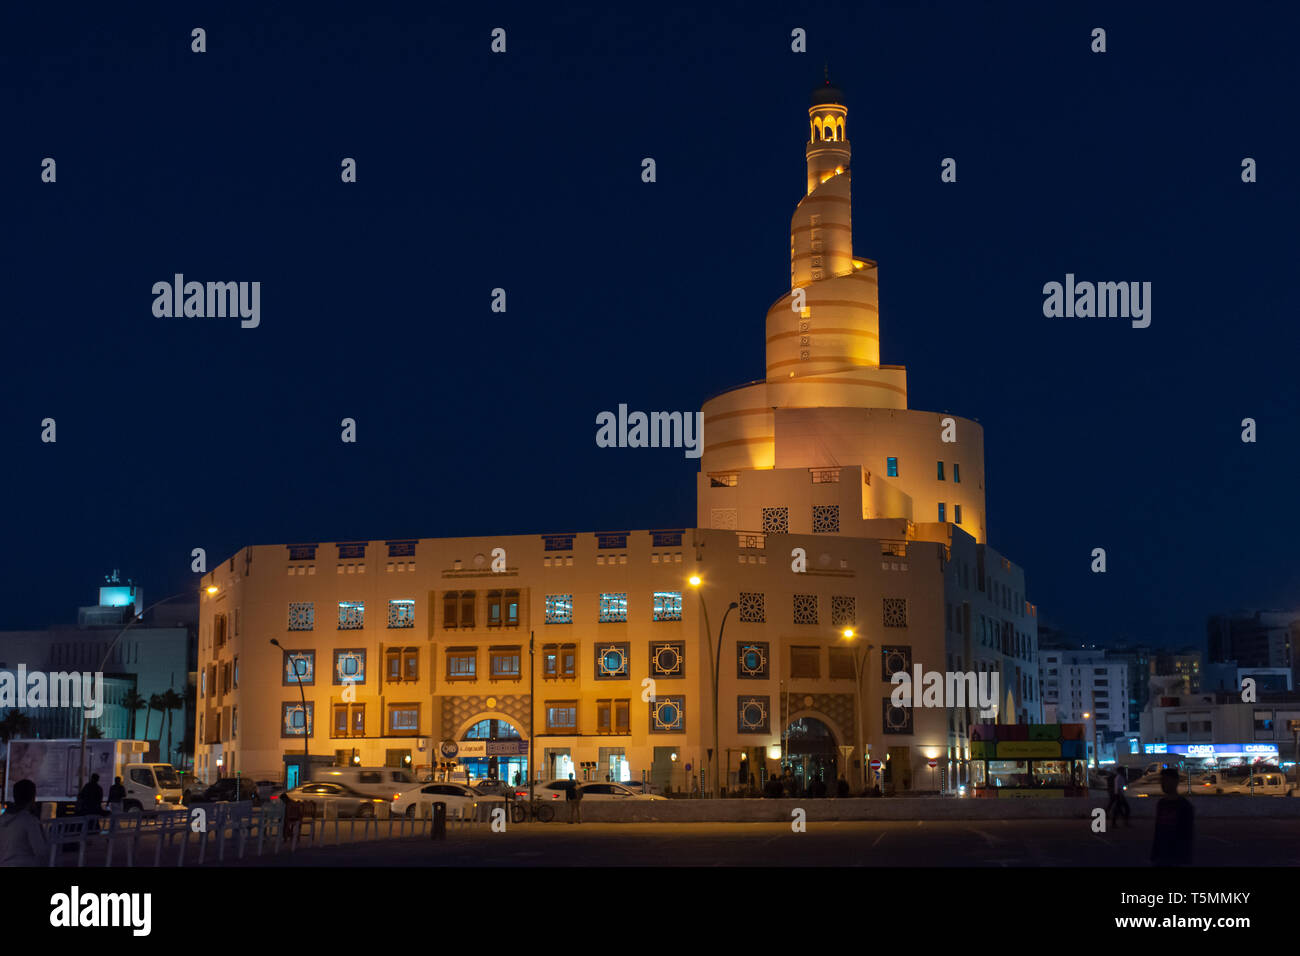 Al Fanar Moschee in der Nähe von Souq Waqif, Doha, Qatar bei Nacht, glühend und zeigt die verdrehte Spirale Tower. Stockfoto